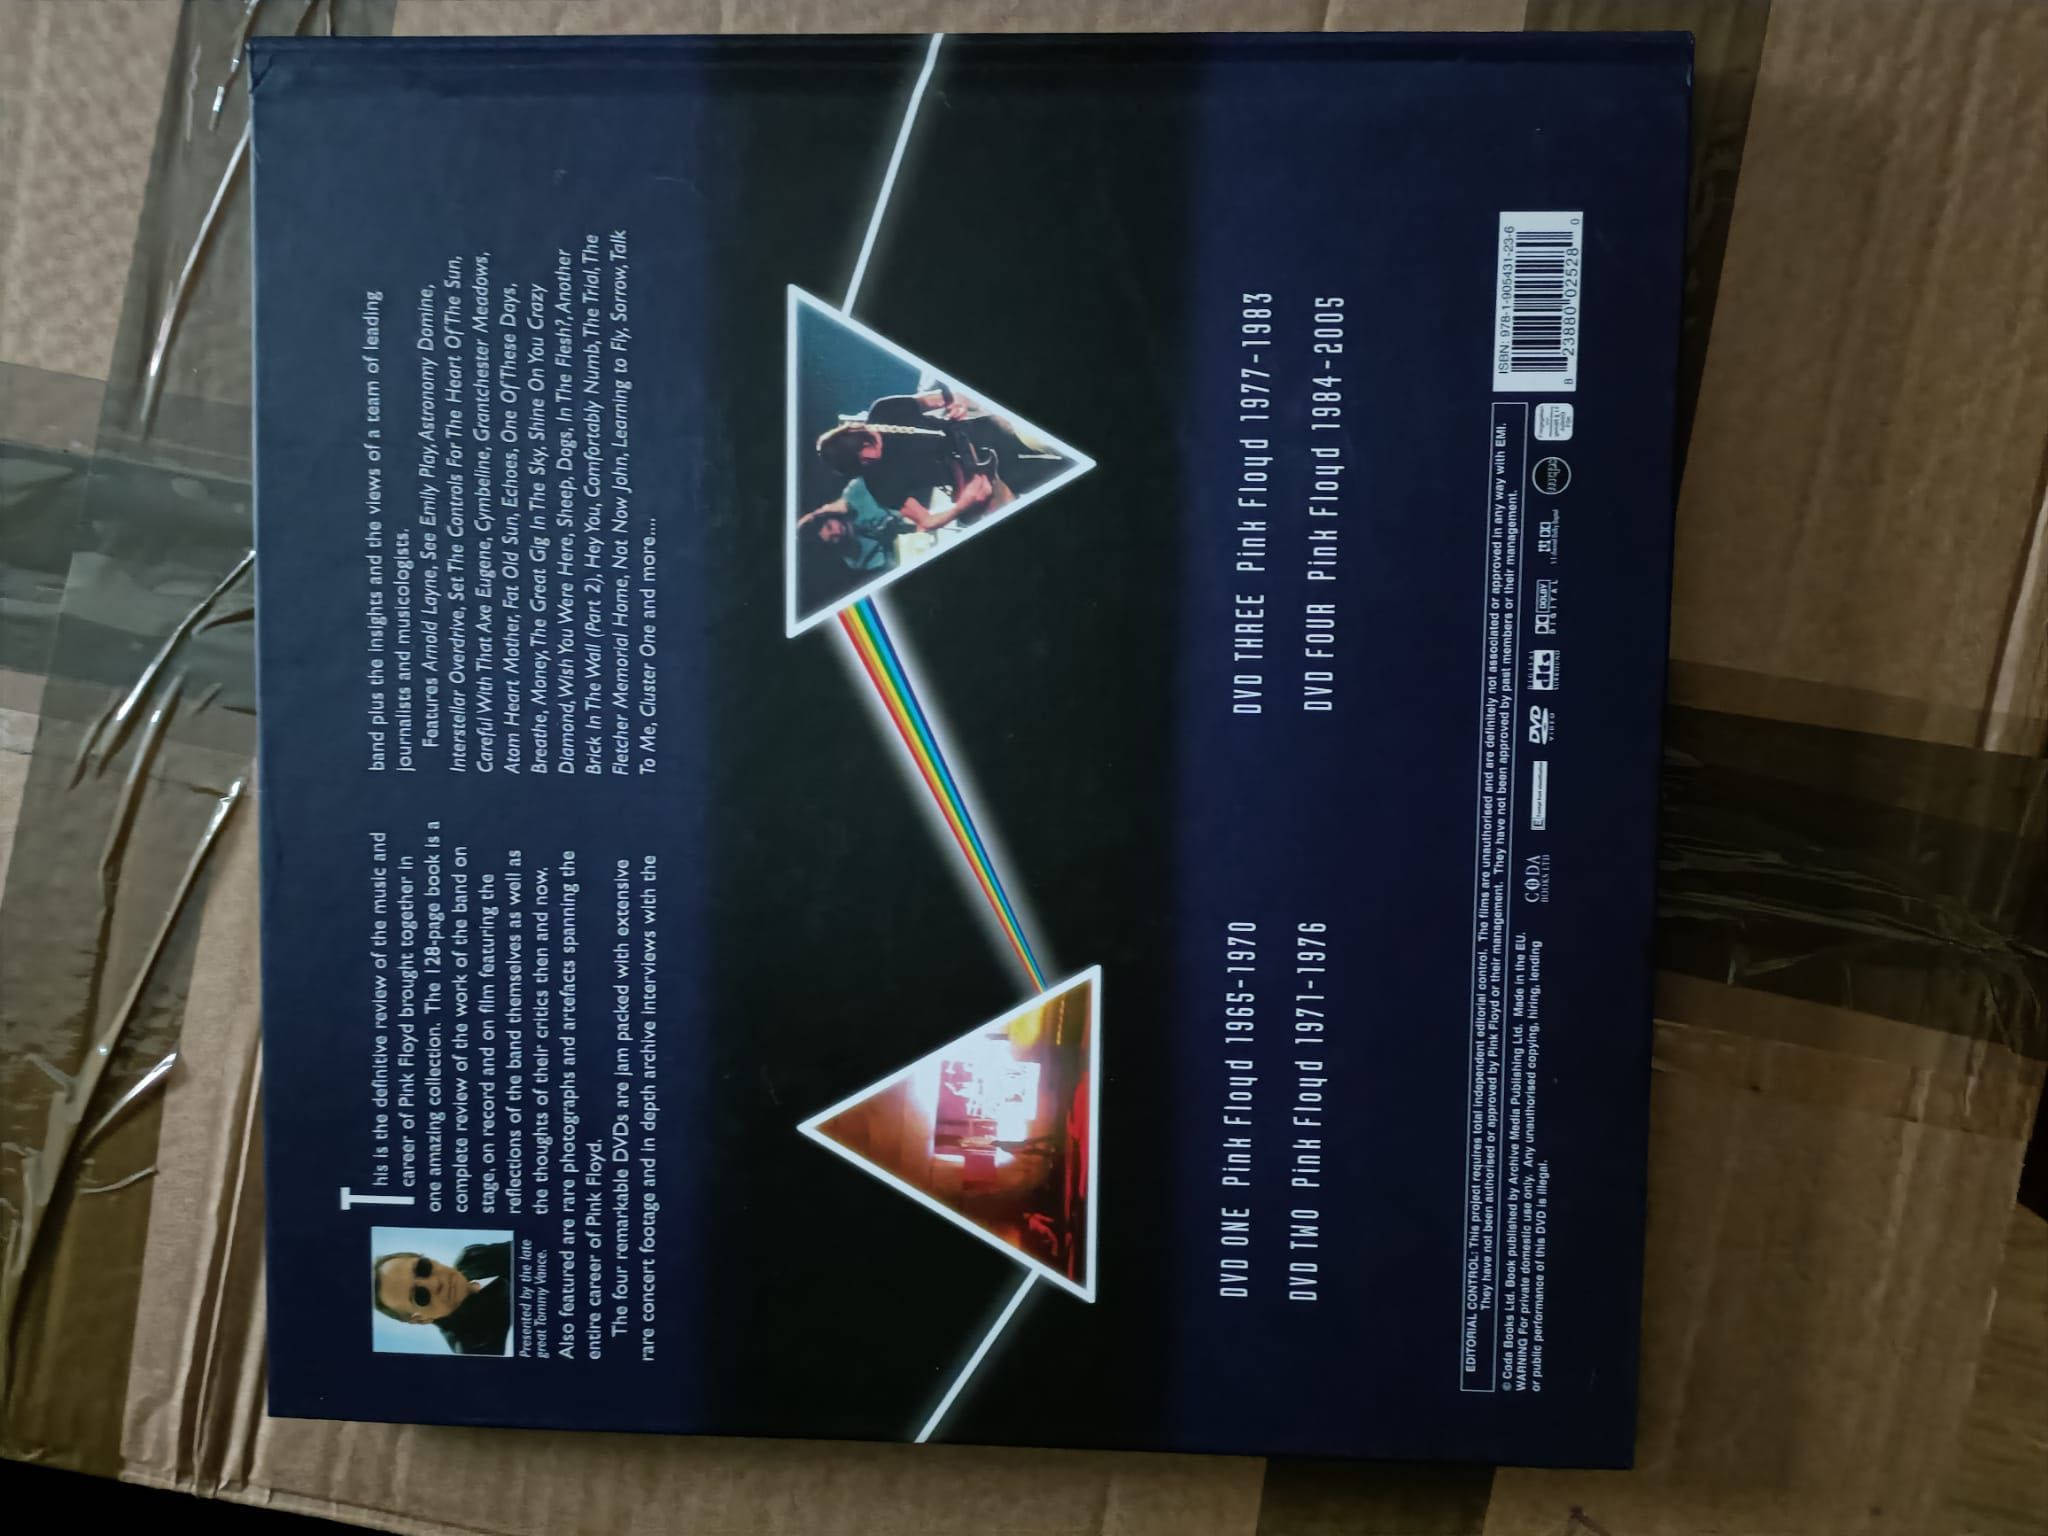 Colecção de 4 DVDs e livro com a história da banda Pink Floyd